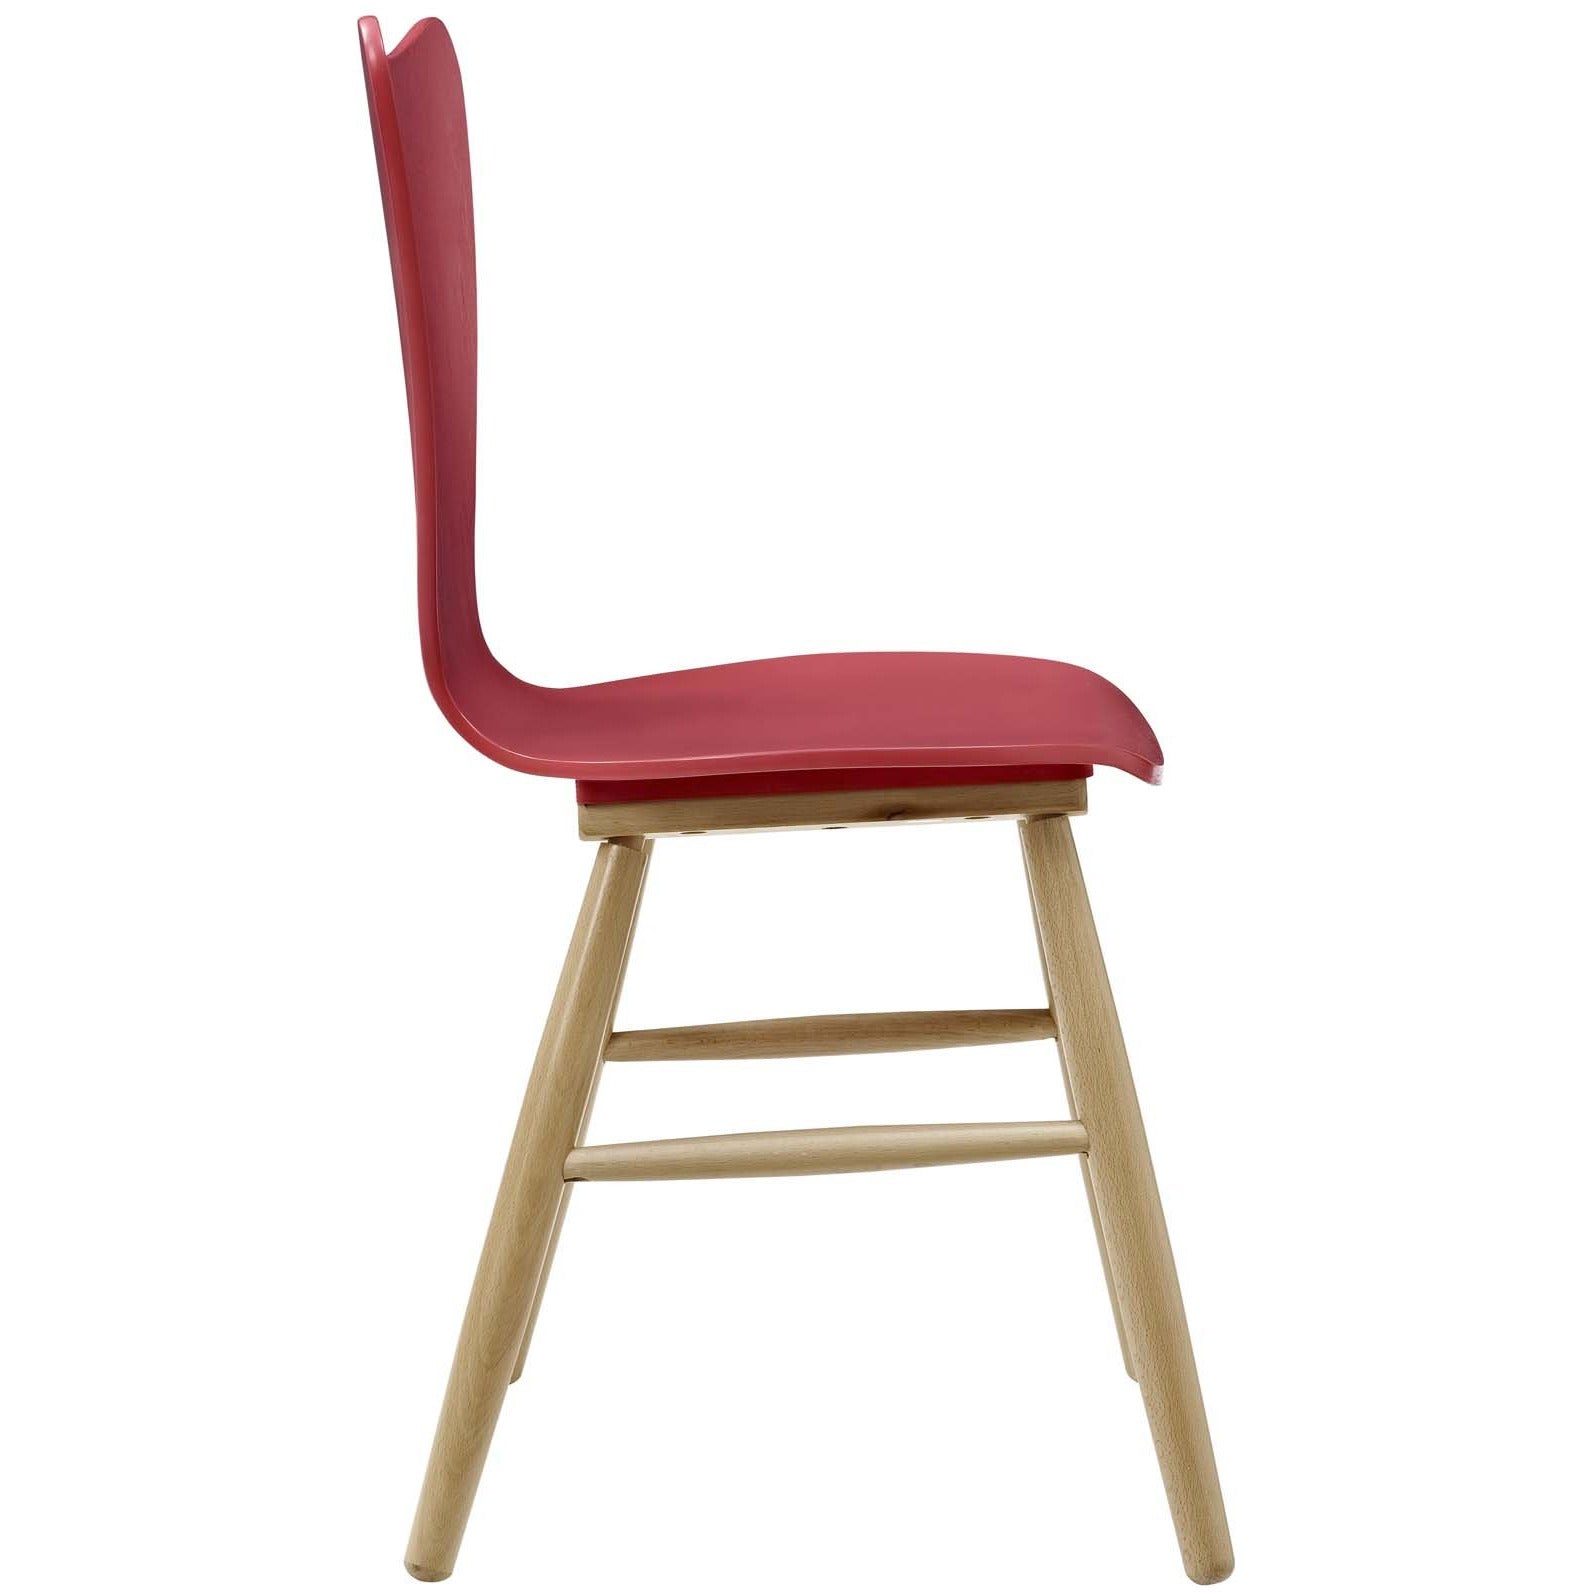 Modway Furniture Modern Cascade Wood Dining Chair - EEI-2672